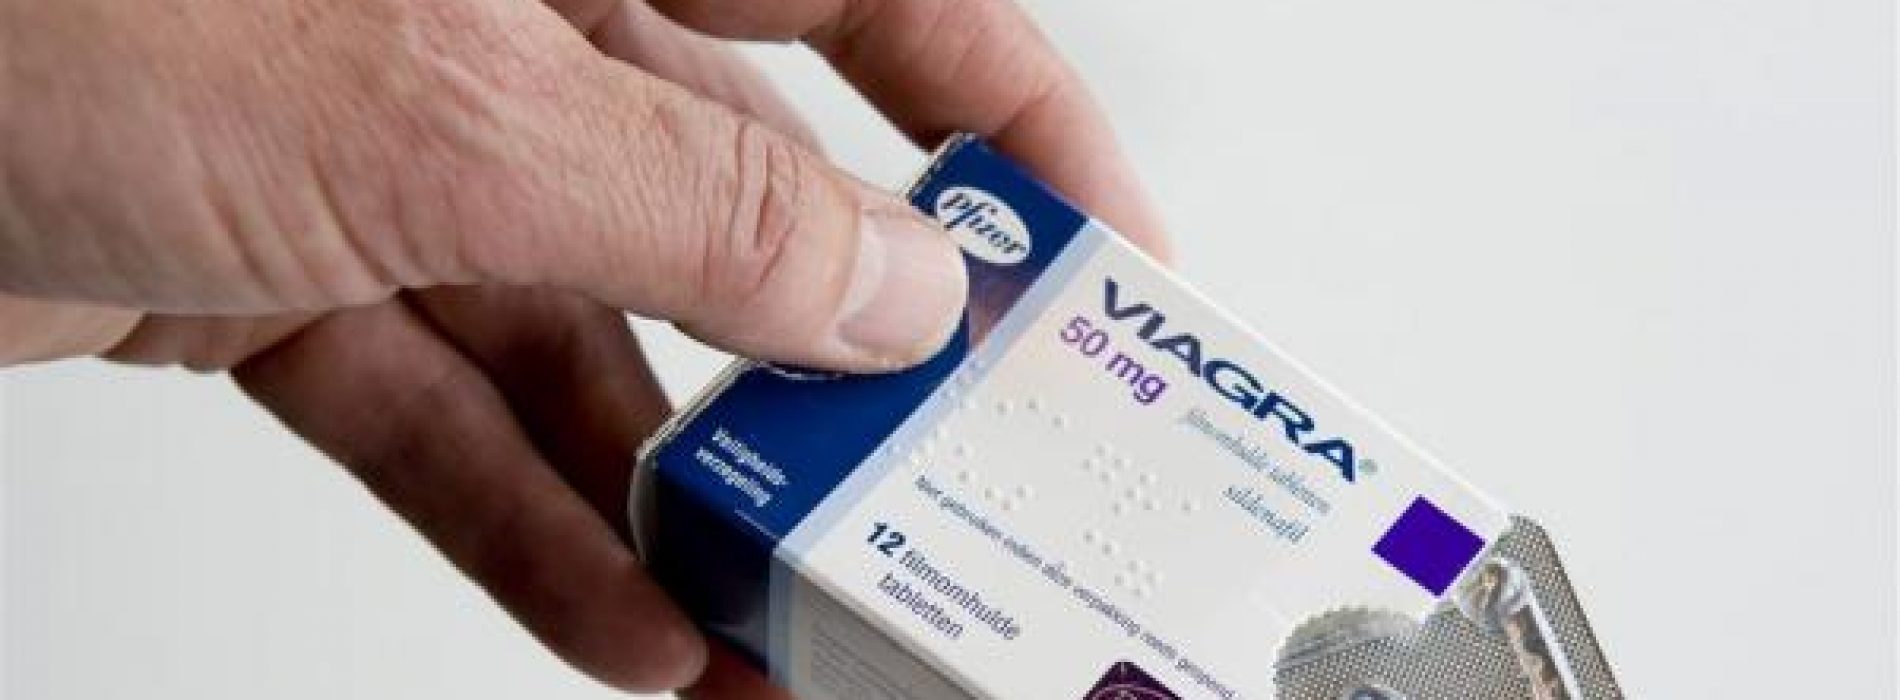 De lang verwachte Viagra voor vrouwen blijkt helemaal niet te werken